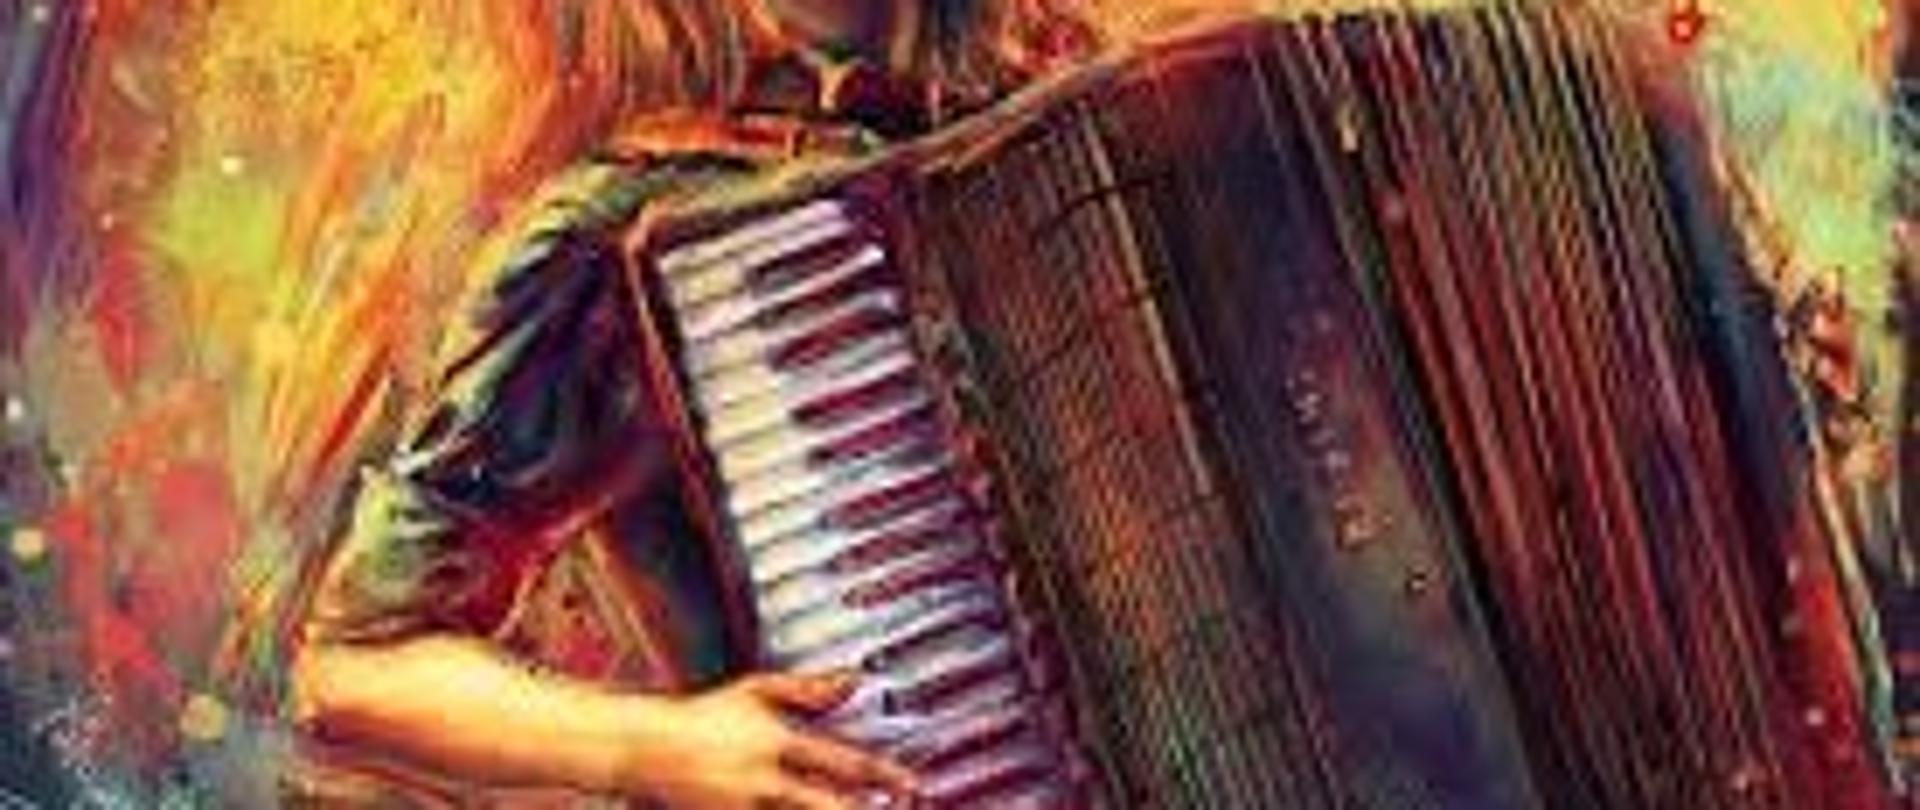 Obraz przedstawiający akordeon - wyglądem przypomina obraz namalowany farbami i przedstawia osobę grającą na akordeonie